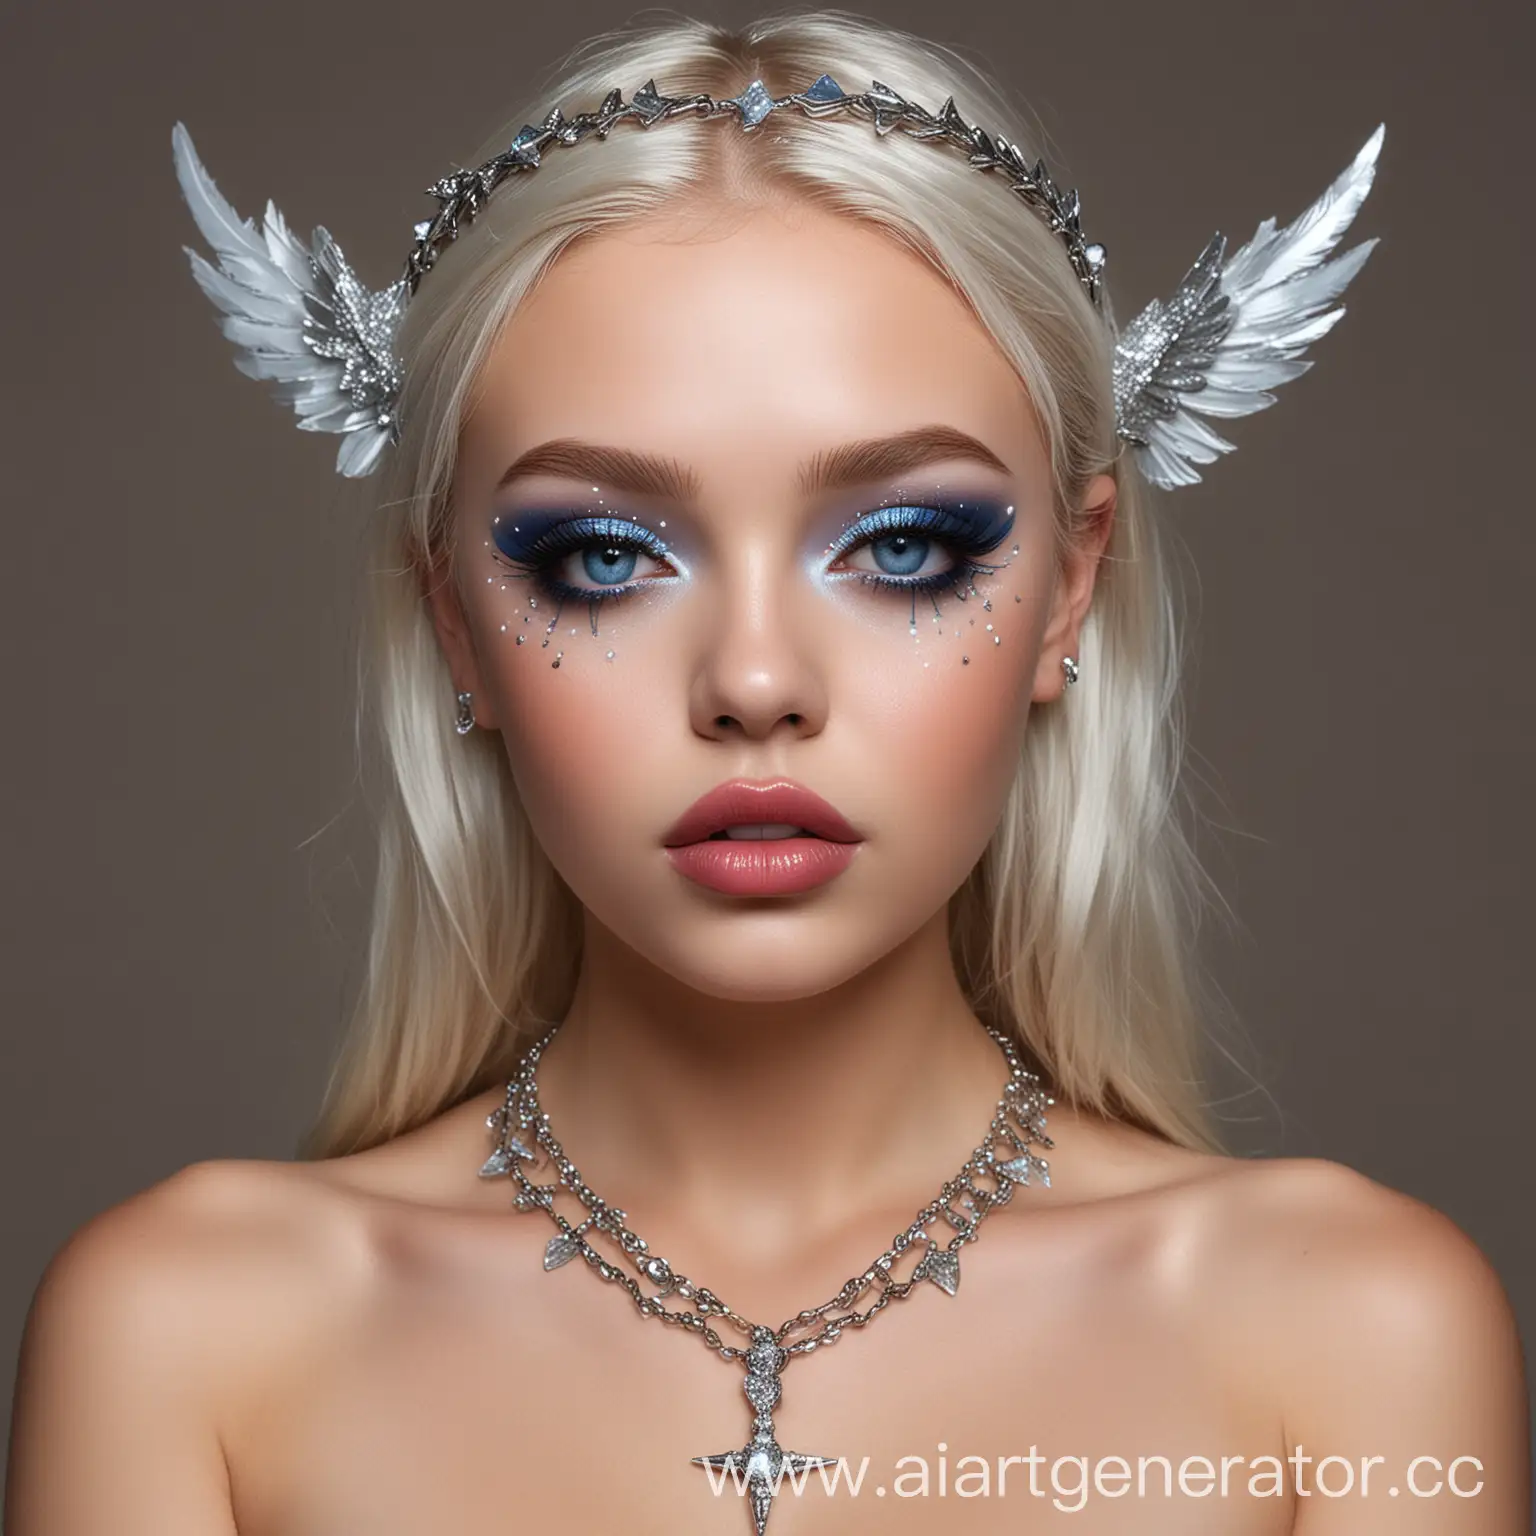 Девушка ангел, полуголая, с цепью бриллиантовой на шее, накрашенными глазами и губами со стрелками, голубые глаза, большие пухлые губы